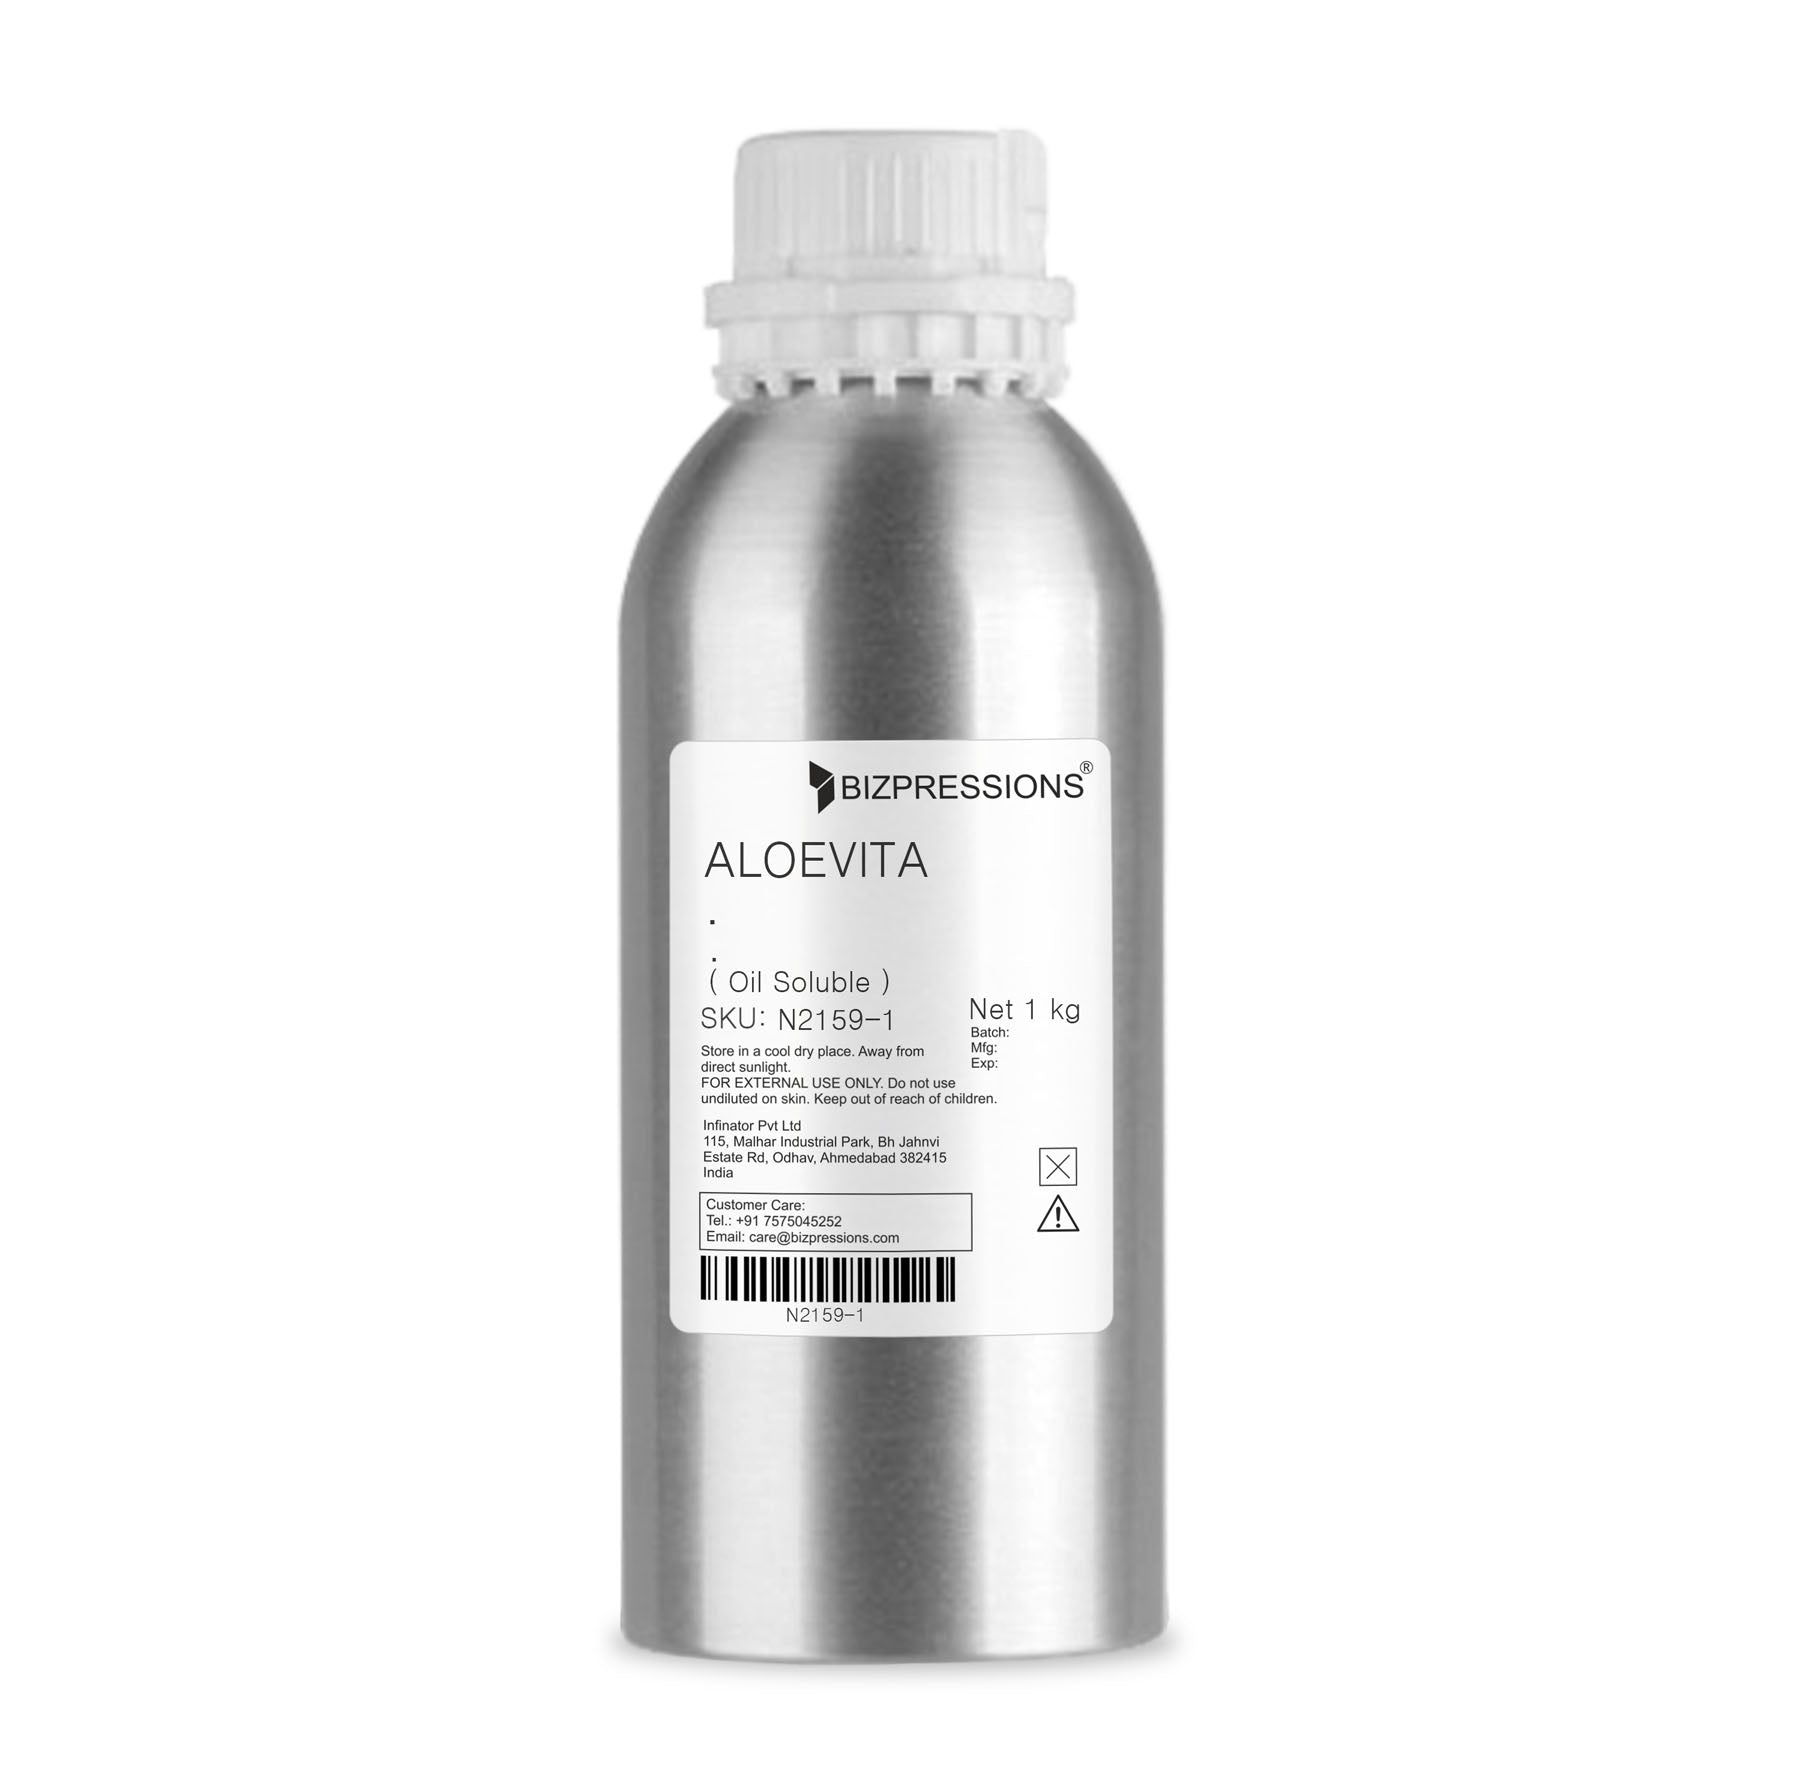 ALOEVITA - Fragrance ( Oil Soluble ) - 1 kg